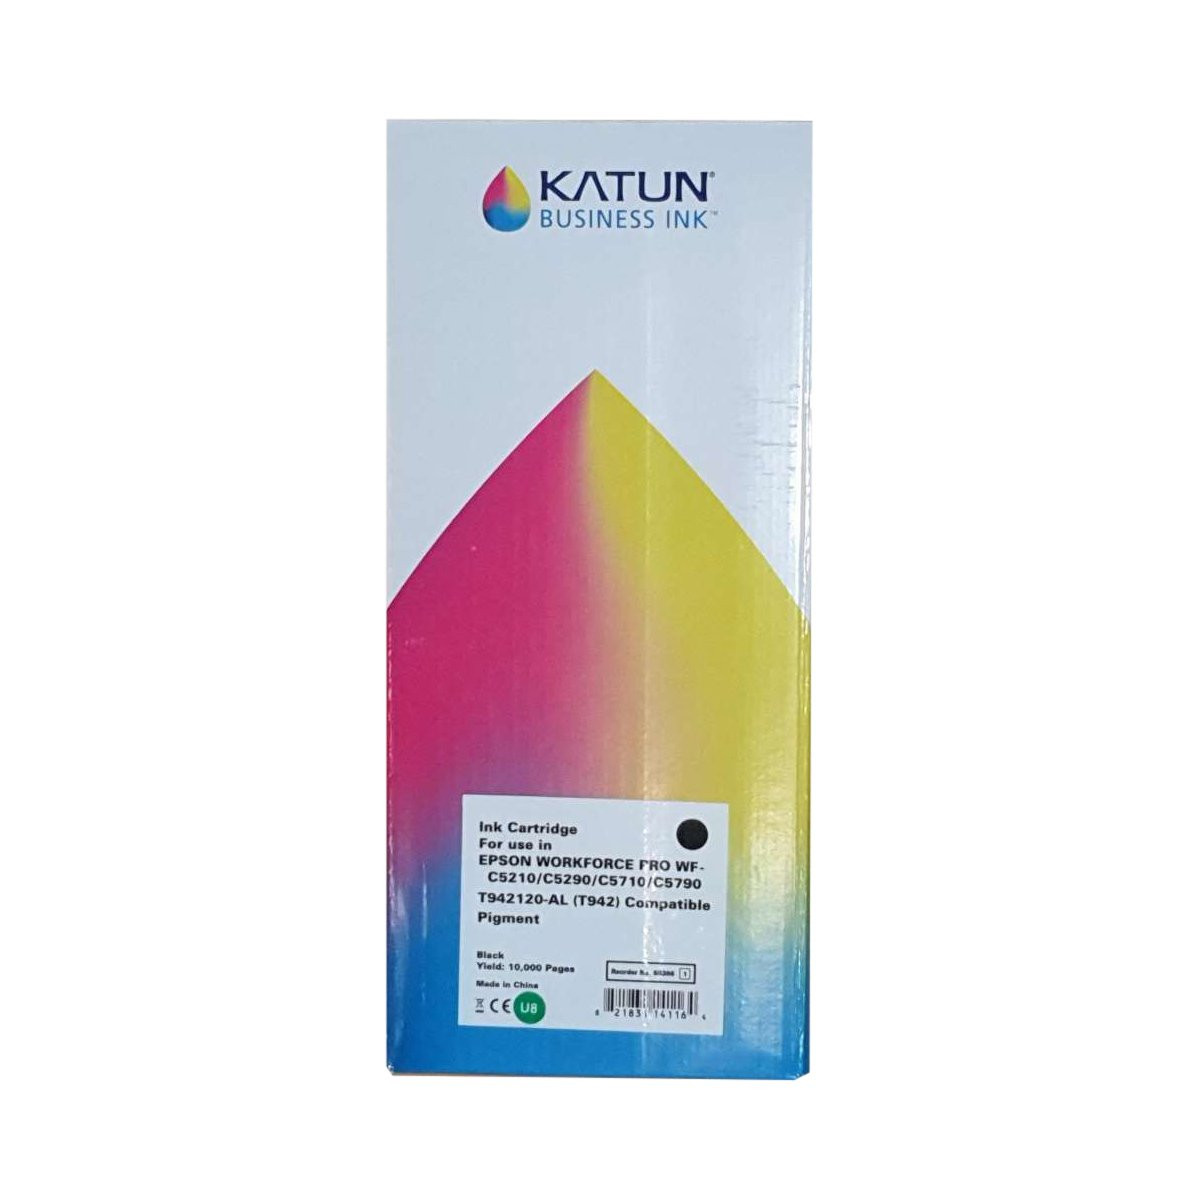 Tinta Compatível com Epson T942120 Preto | WFC5790 WFC5290 WFC5710 WFC5210 | Katun Business Ink 10K